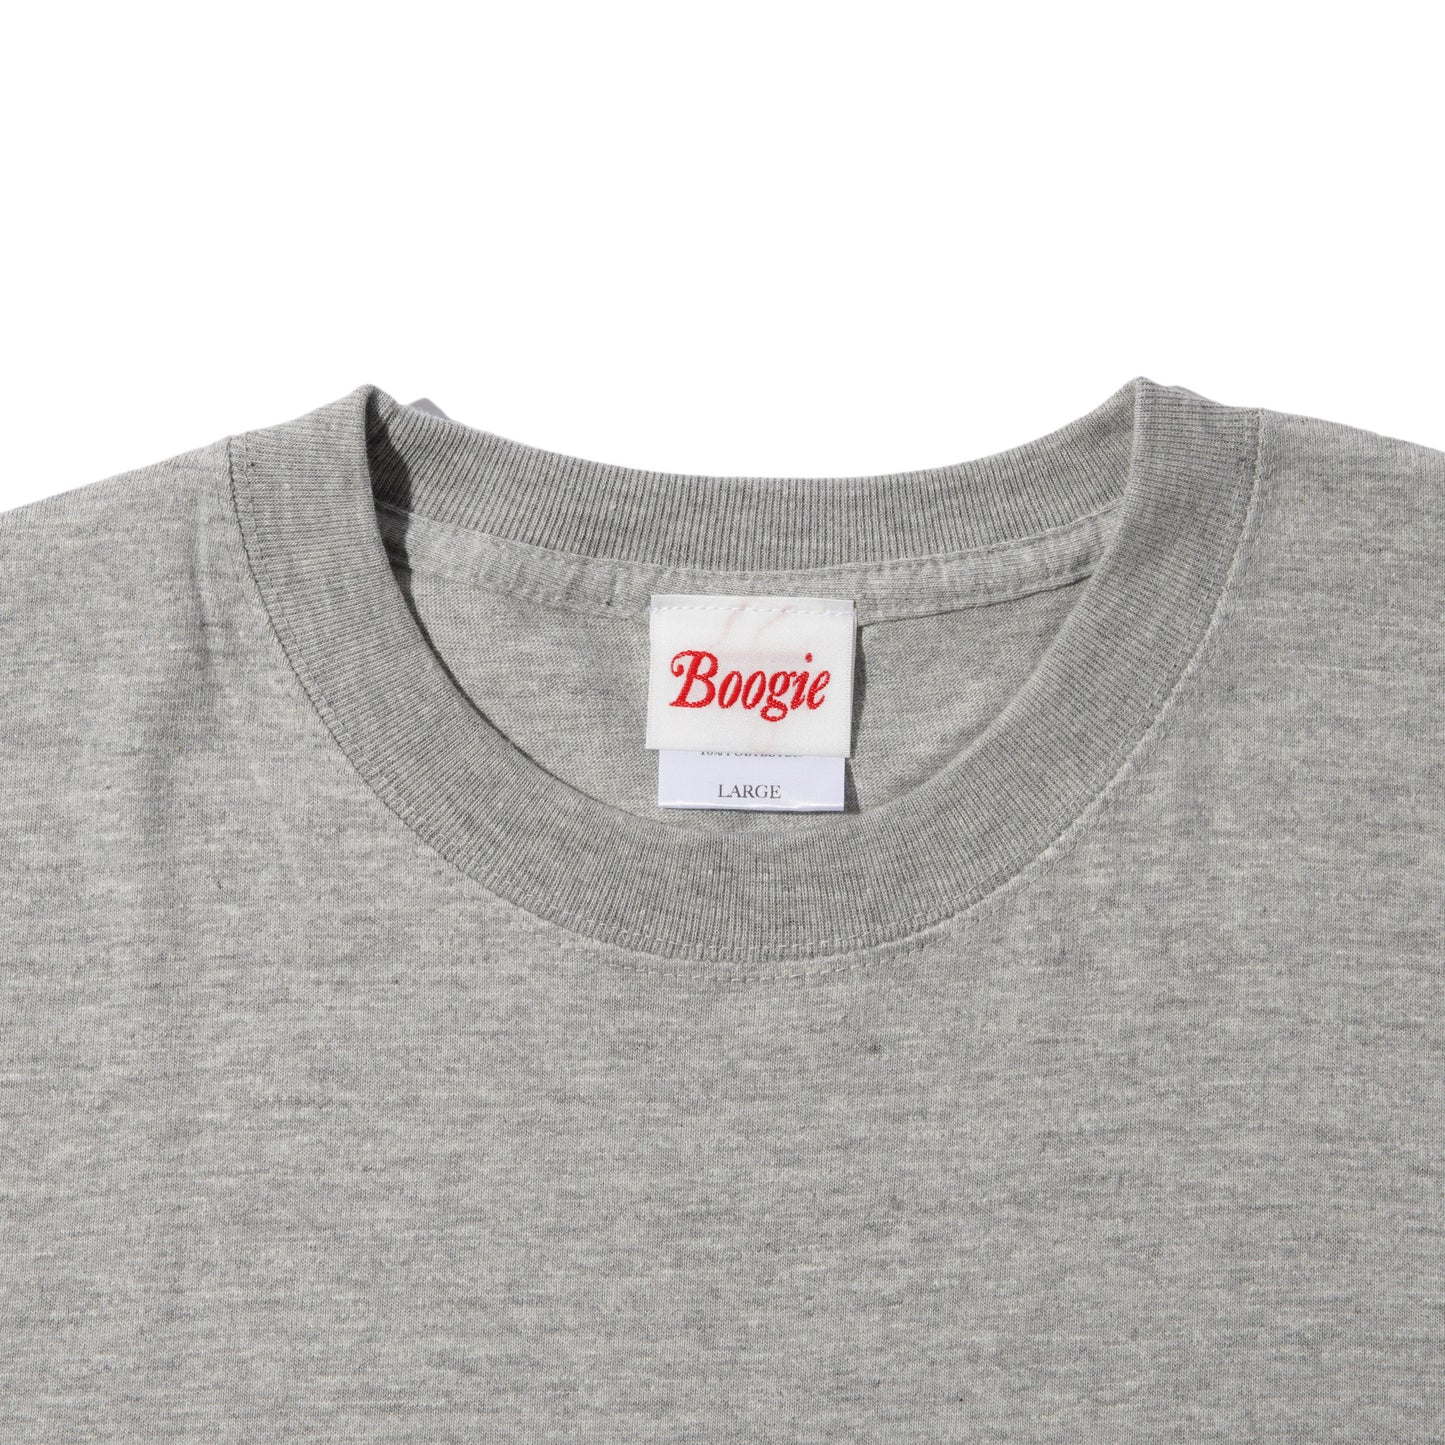 Boogie City Prep T-Shirt